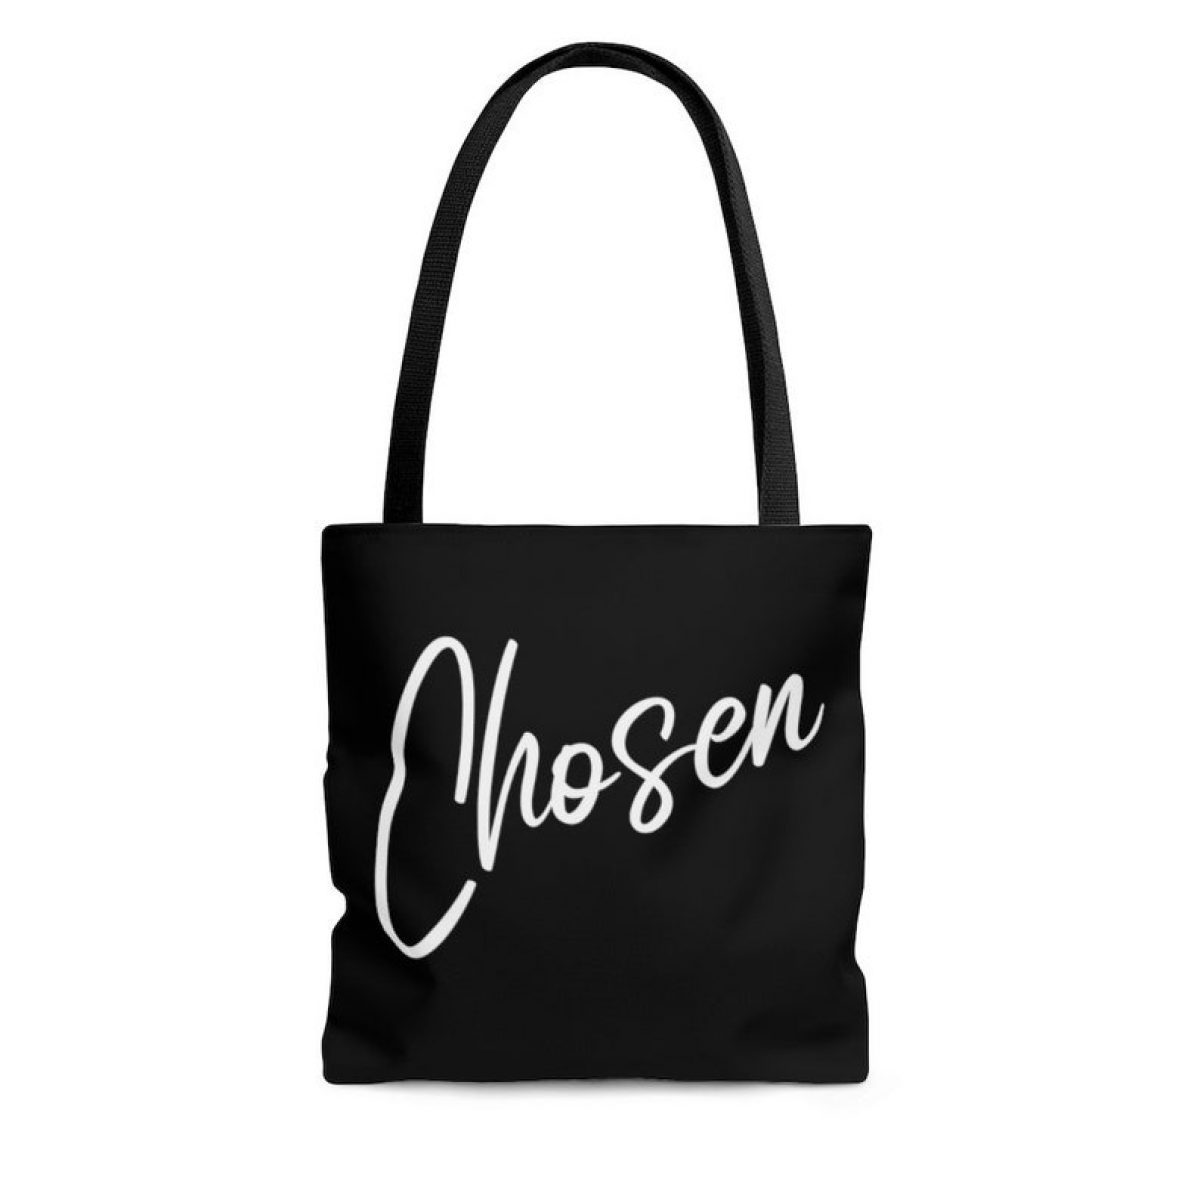 chosen tote bag christian gift for mom faith based gift for her 1 5